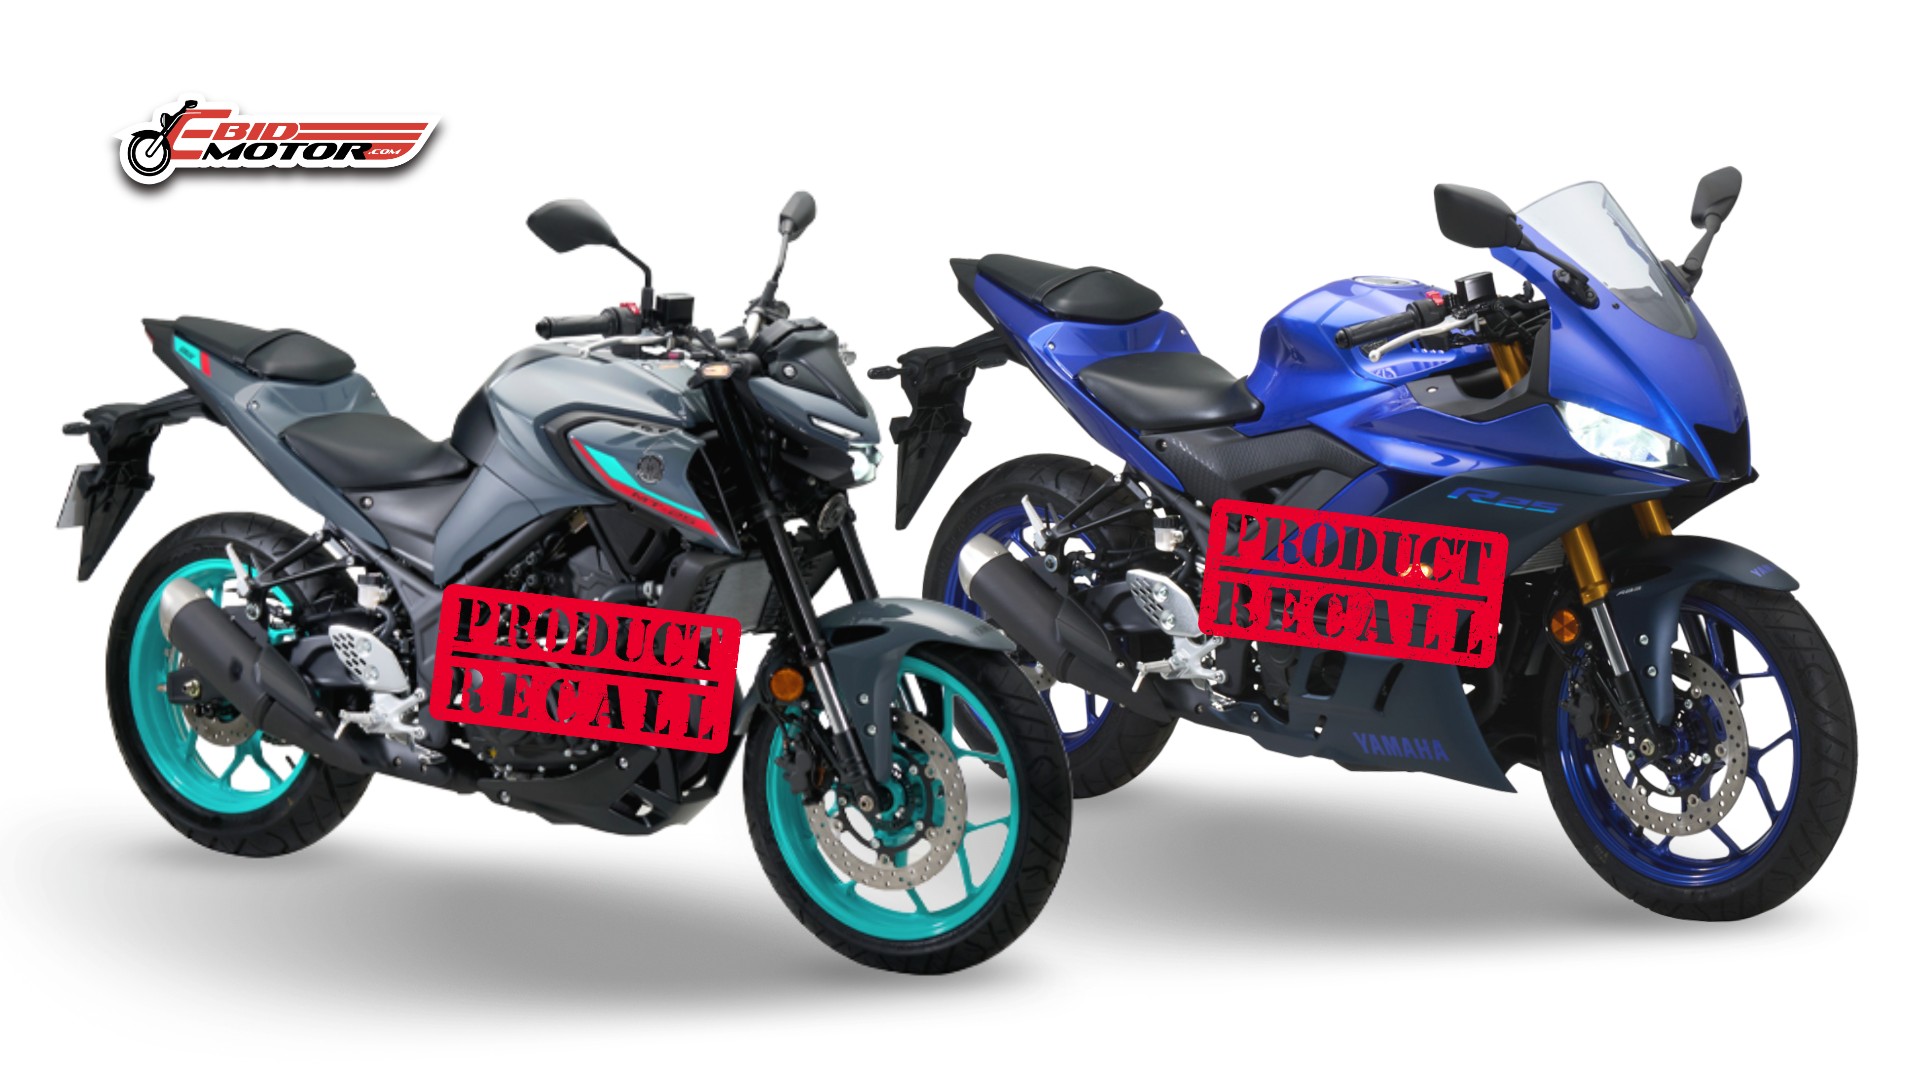 Masalah Hos Brek, HLYM Panggil Semula Yamaha R25 & MT25 Yang Dah Terjual!